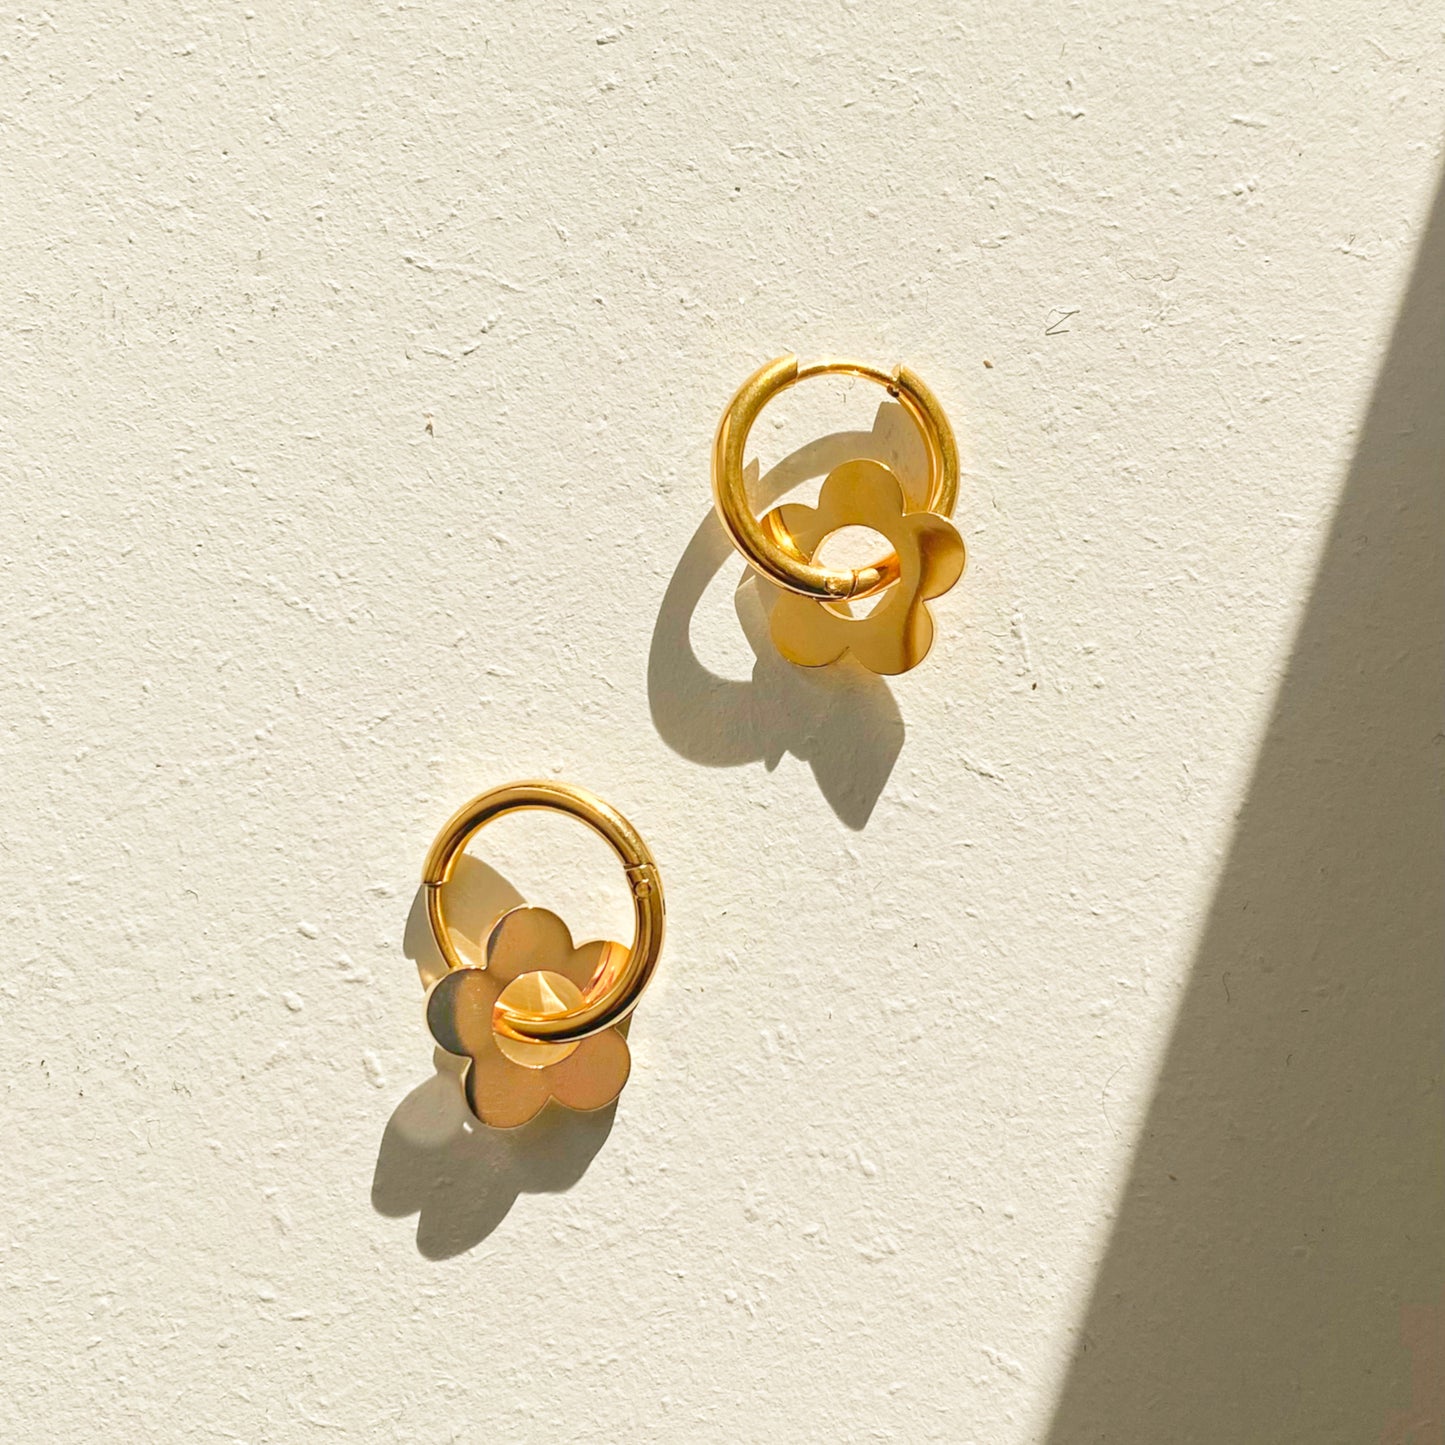 Daisy - Gold flowers hoop earrings in stainless steel